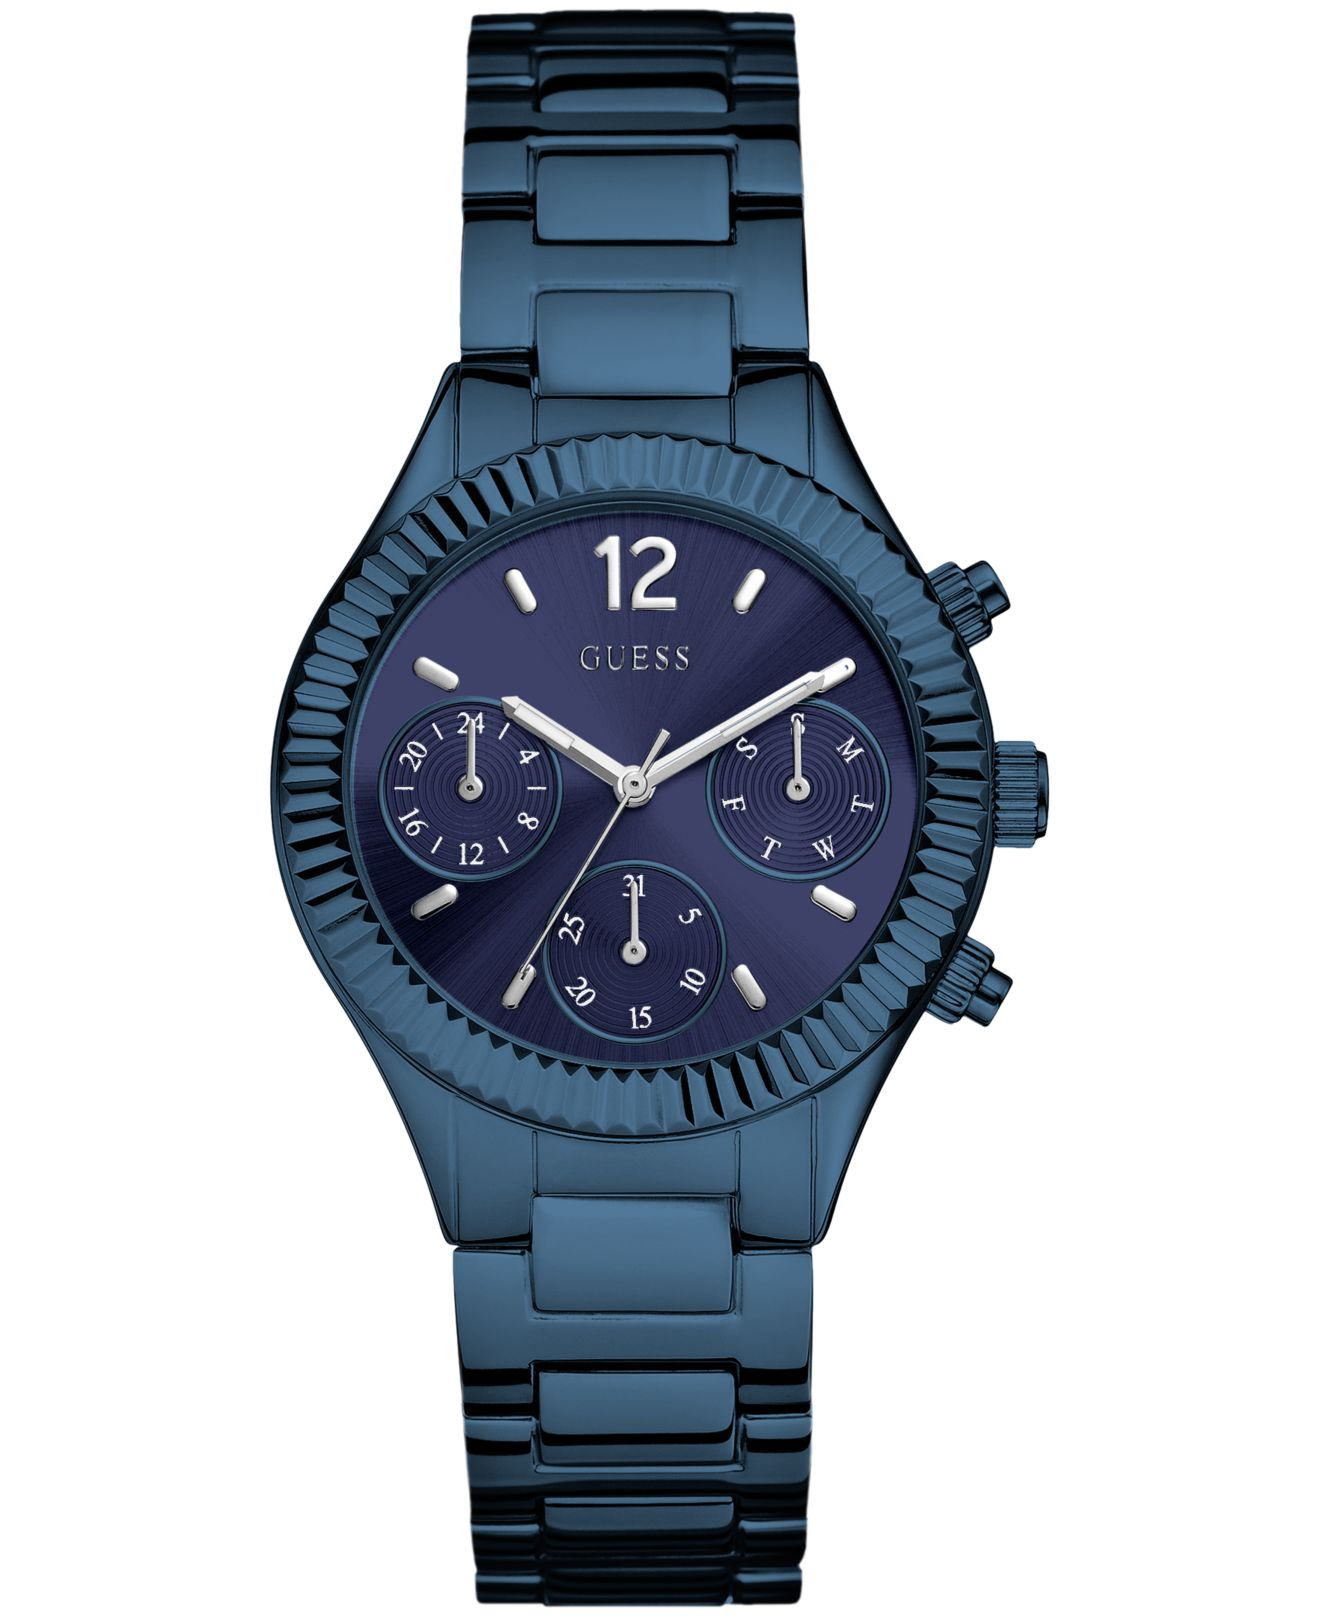 Часы наручные guess gw0315l2. Guess watch Blue. Часы guess синие. Часы Гесс 0034l4.